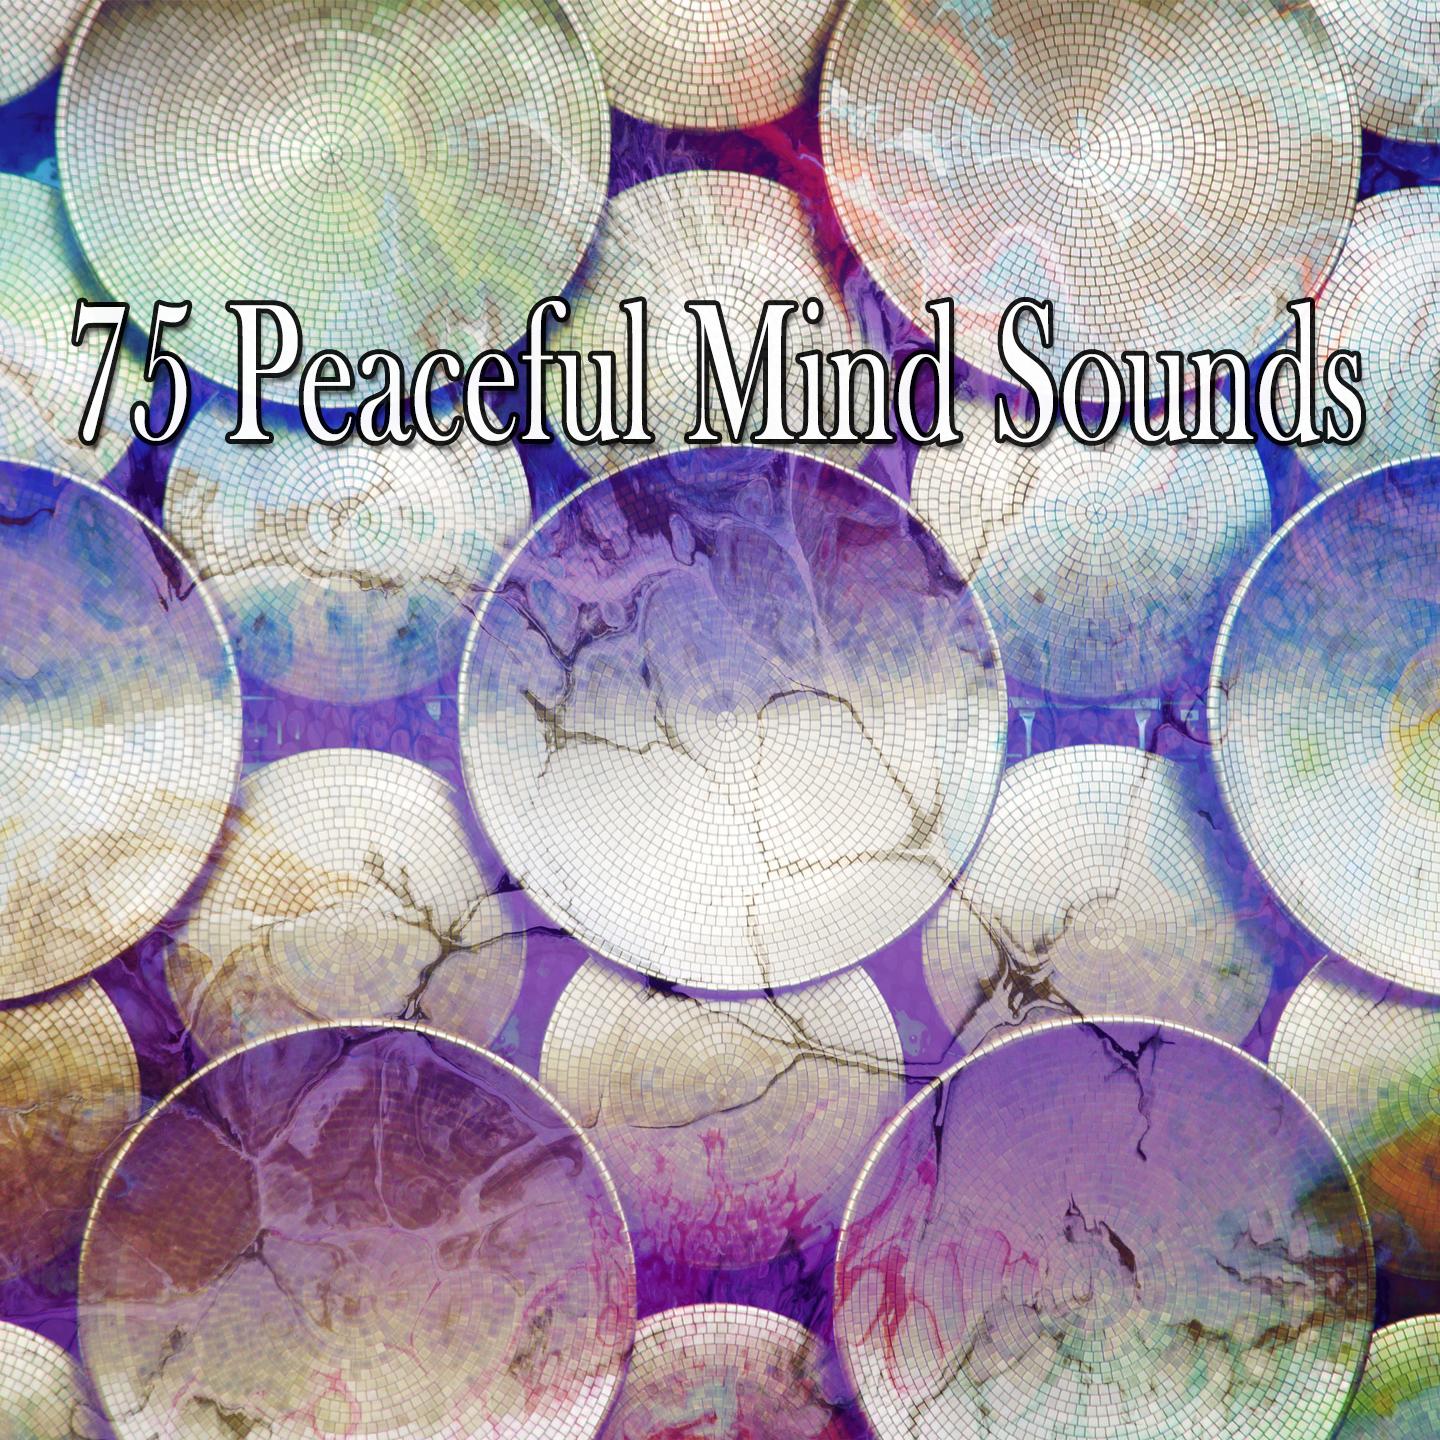 75 Peaceful Mind Sounds